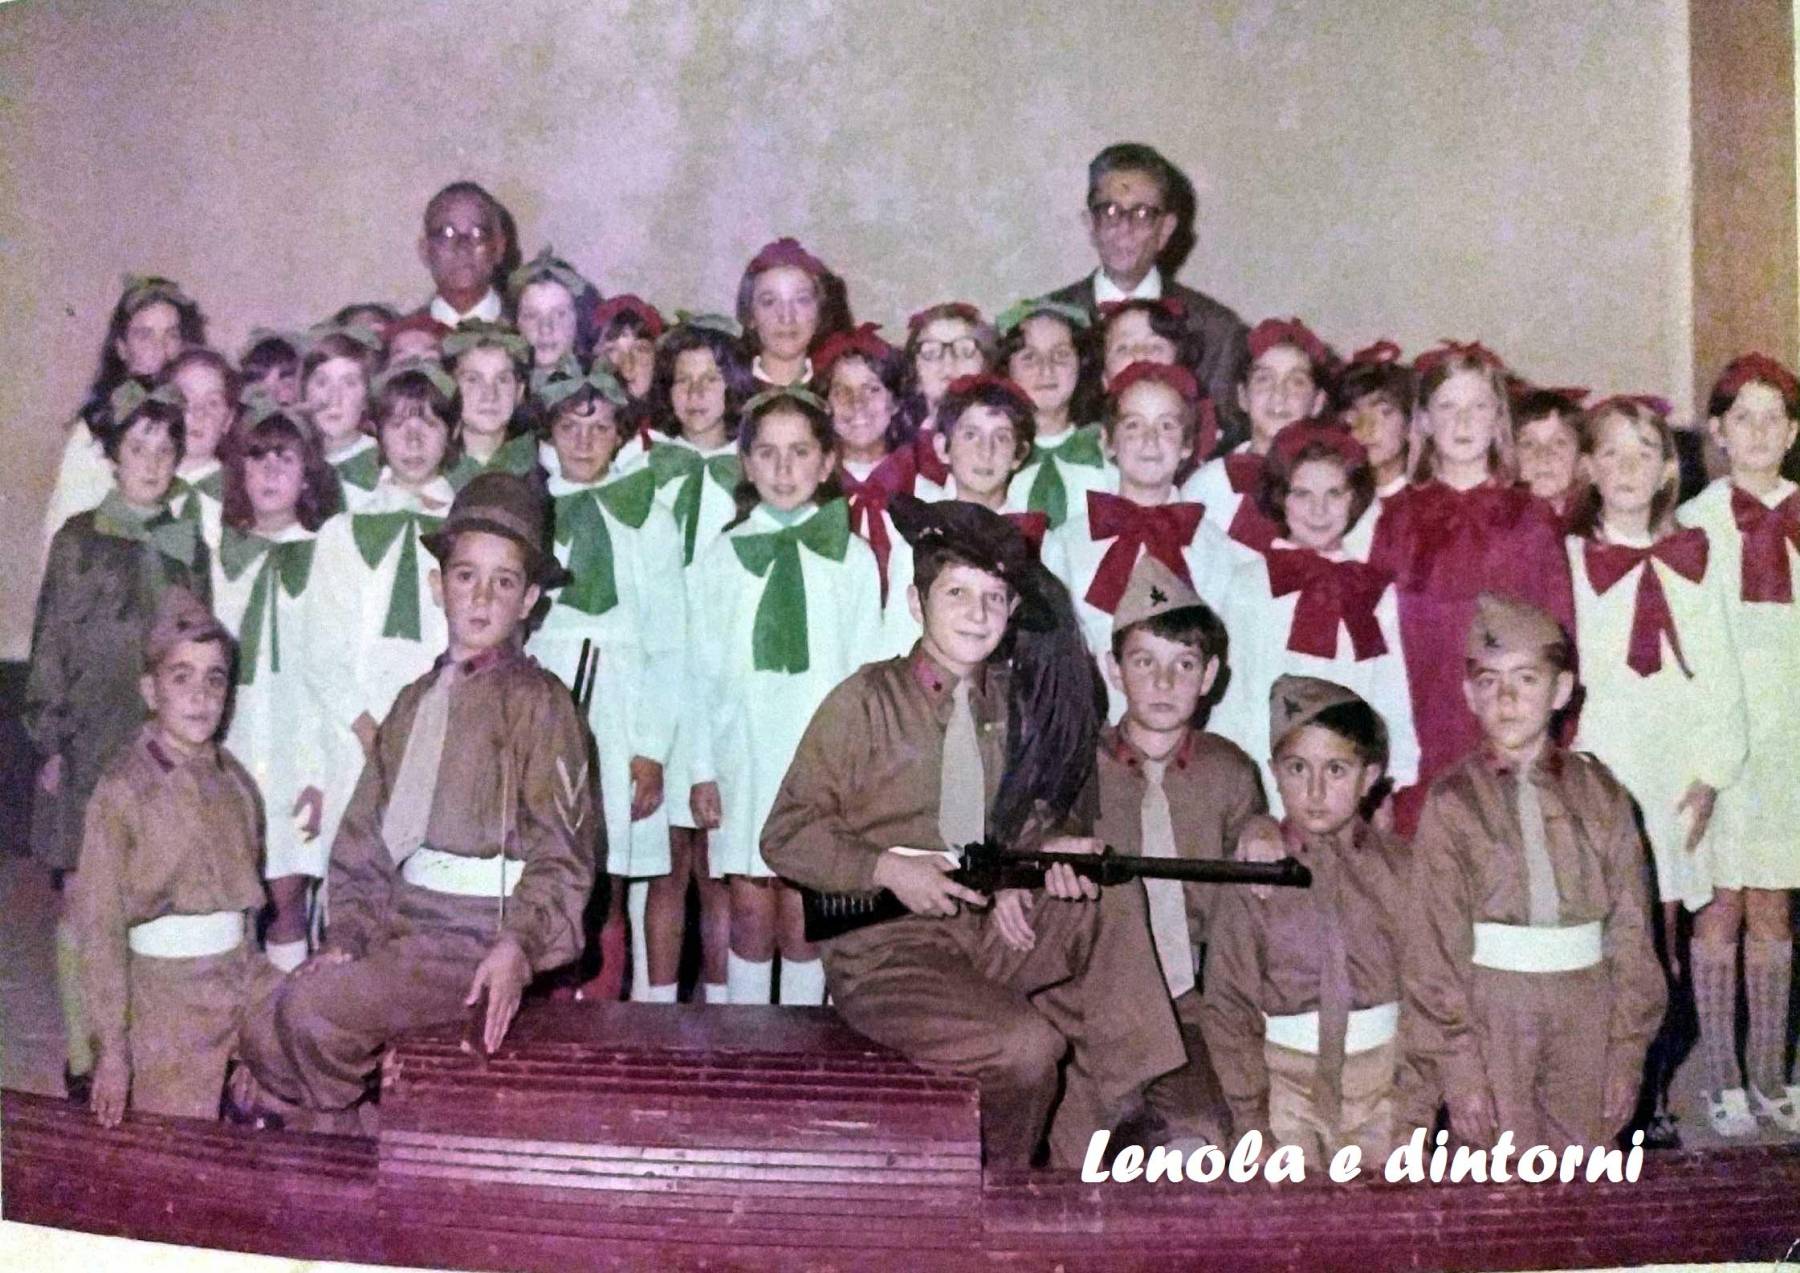 ribalta dei piccoli, giulio tatarelli, 1969, franco spirito